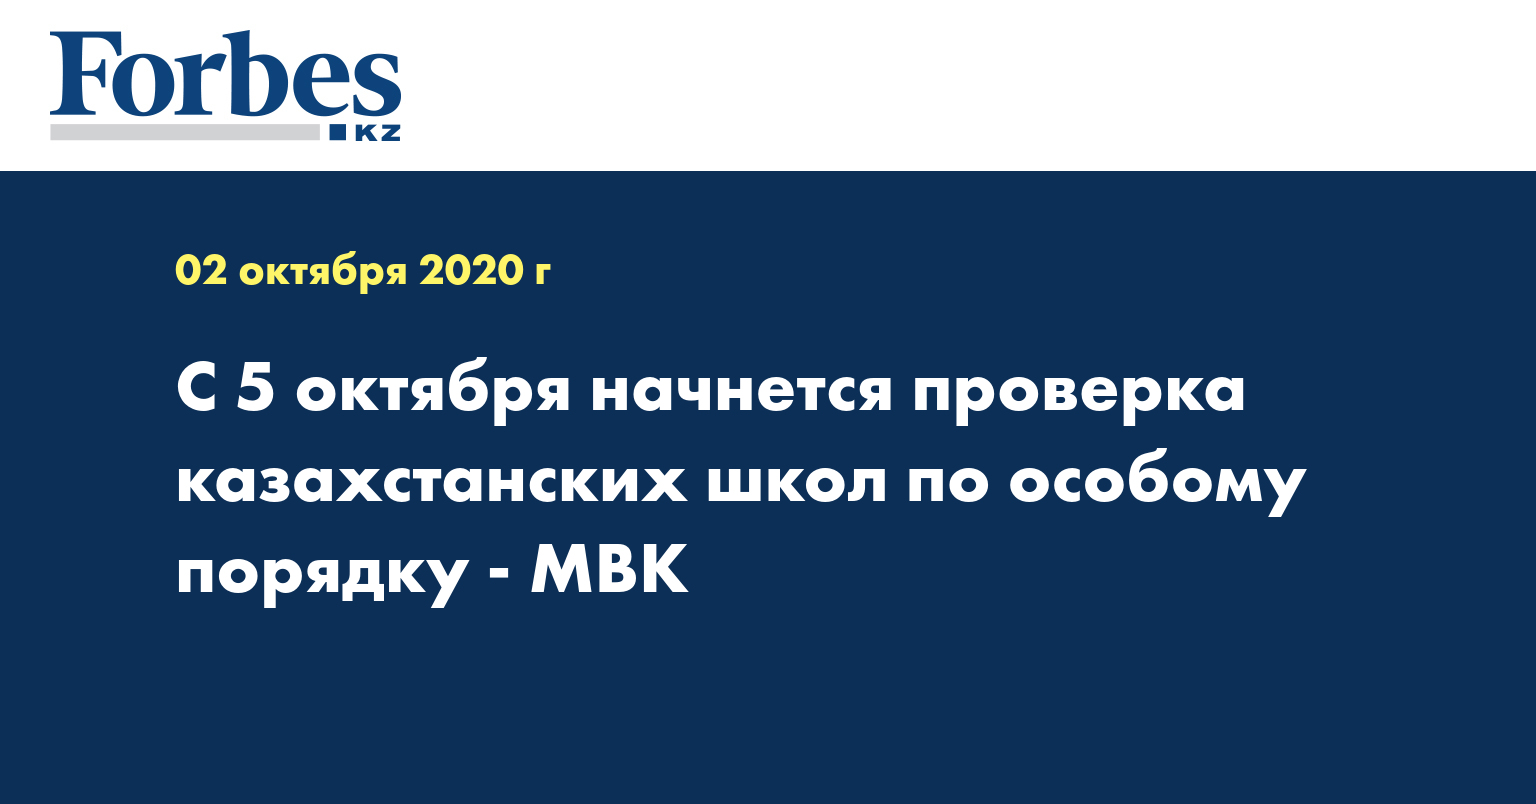 С 5 октября начнется проверка казахстанских школ по особому порядку - МВК